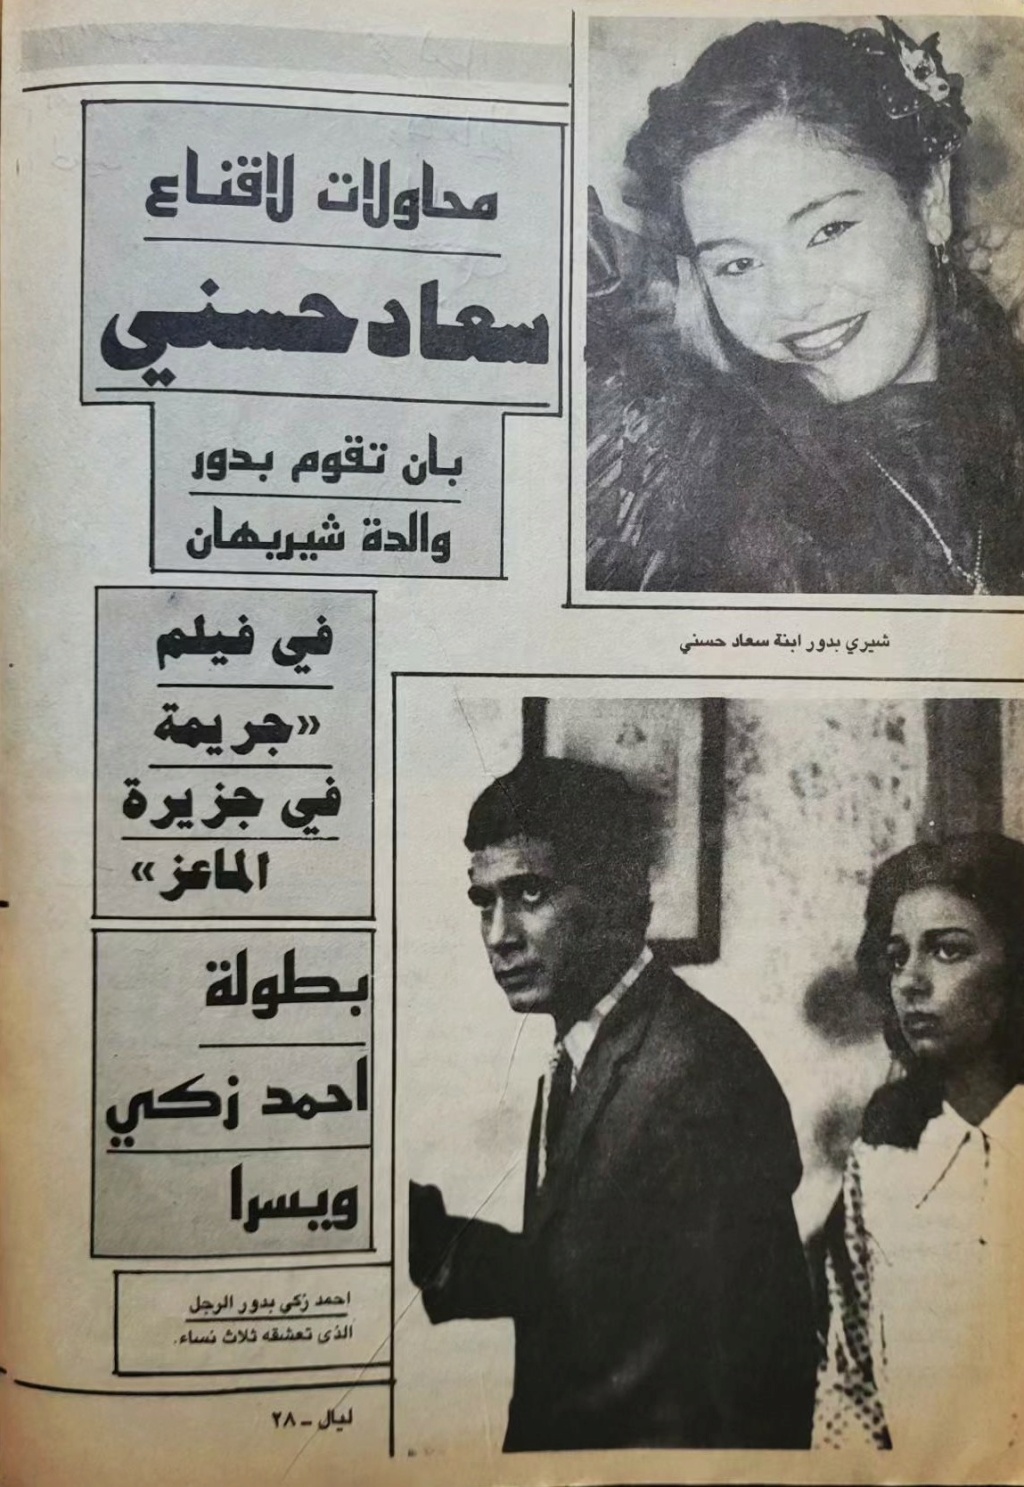 حسني - مقال صحفي : محاولات لاقناع سعاد حسني بان تقوم بدور والدة شيريهان 1987 م 1469